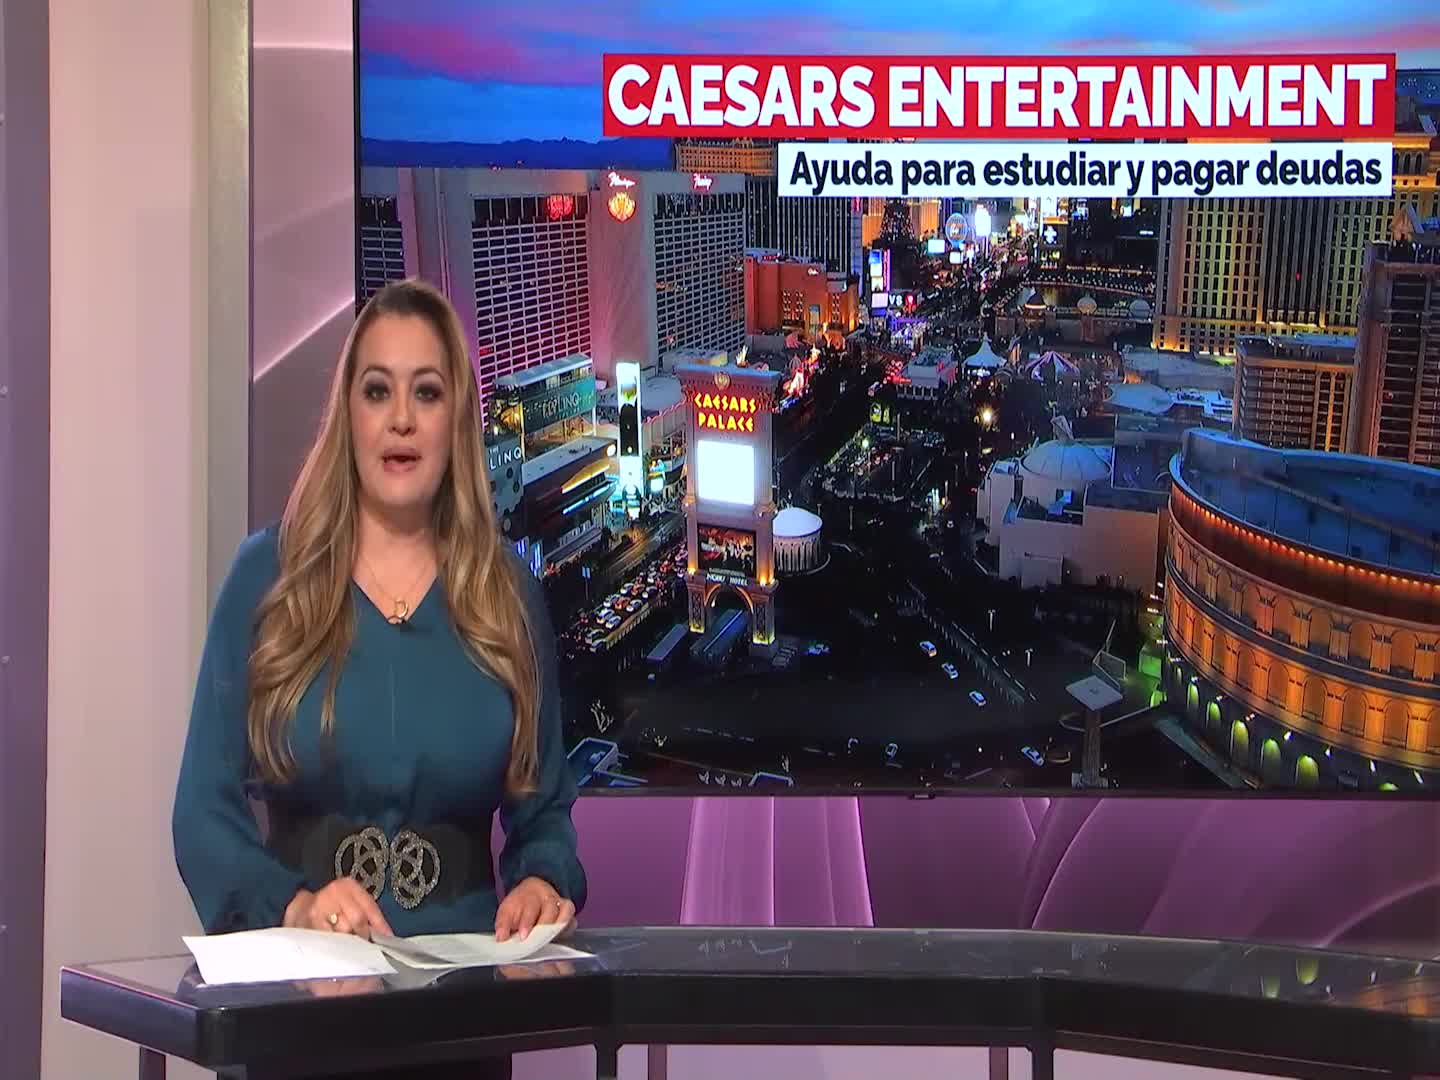 Caesars Entertainment ofrece educación a empleados